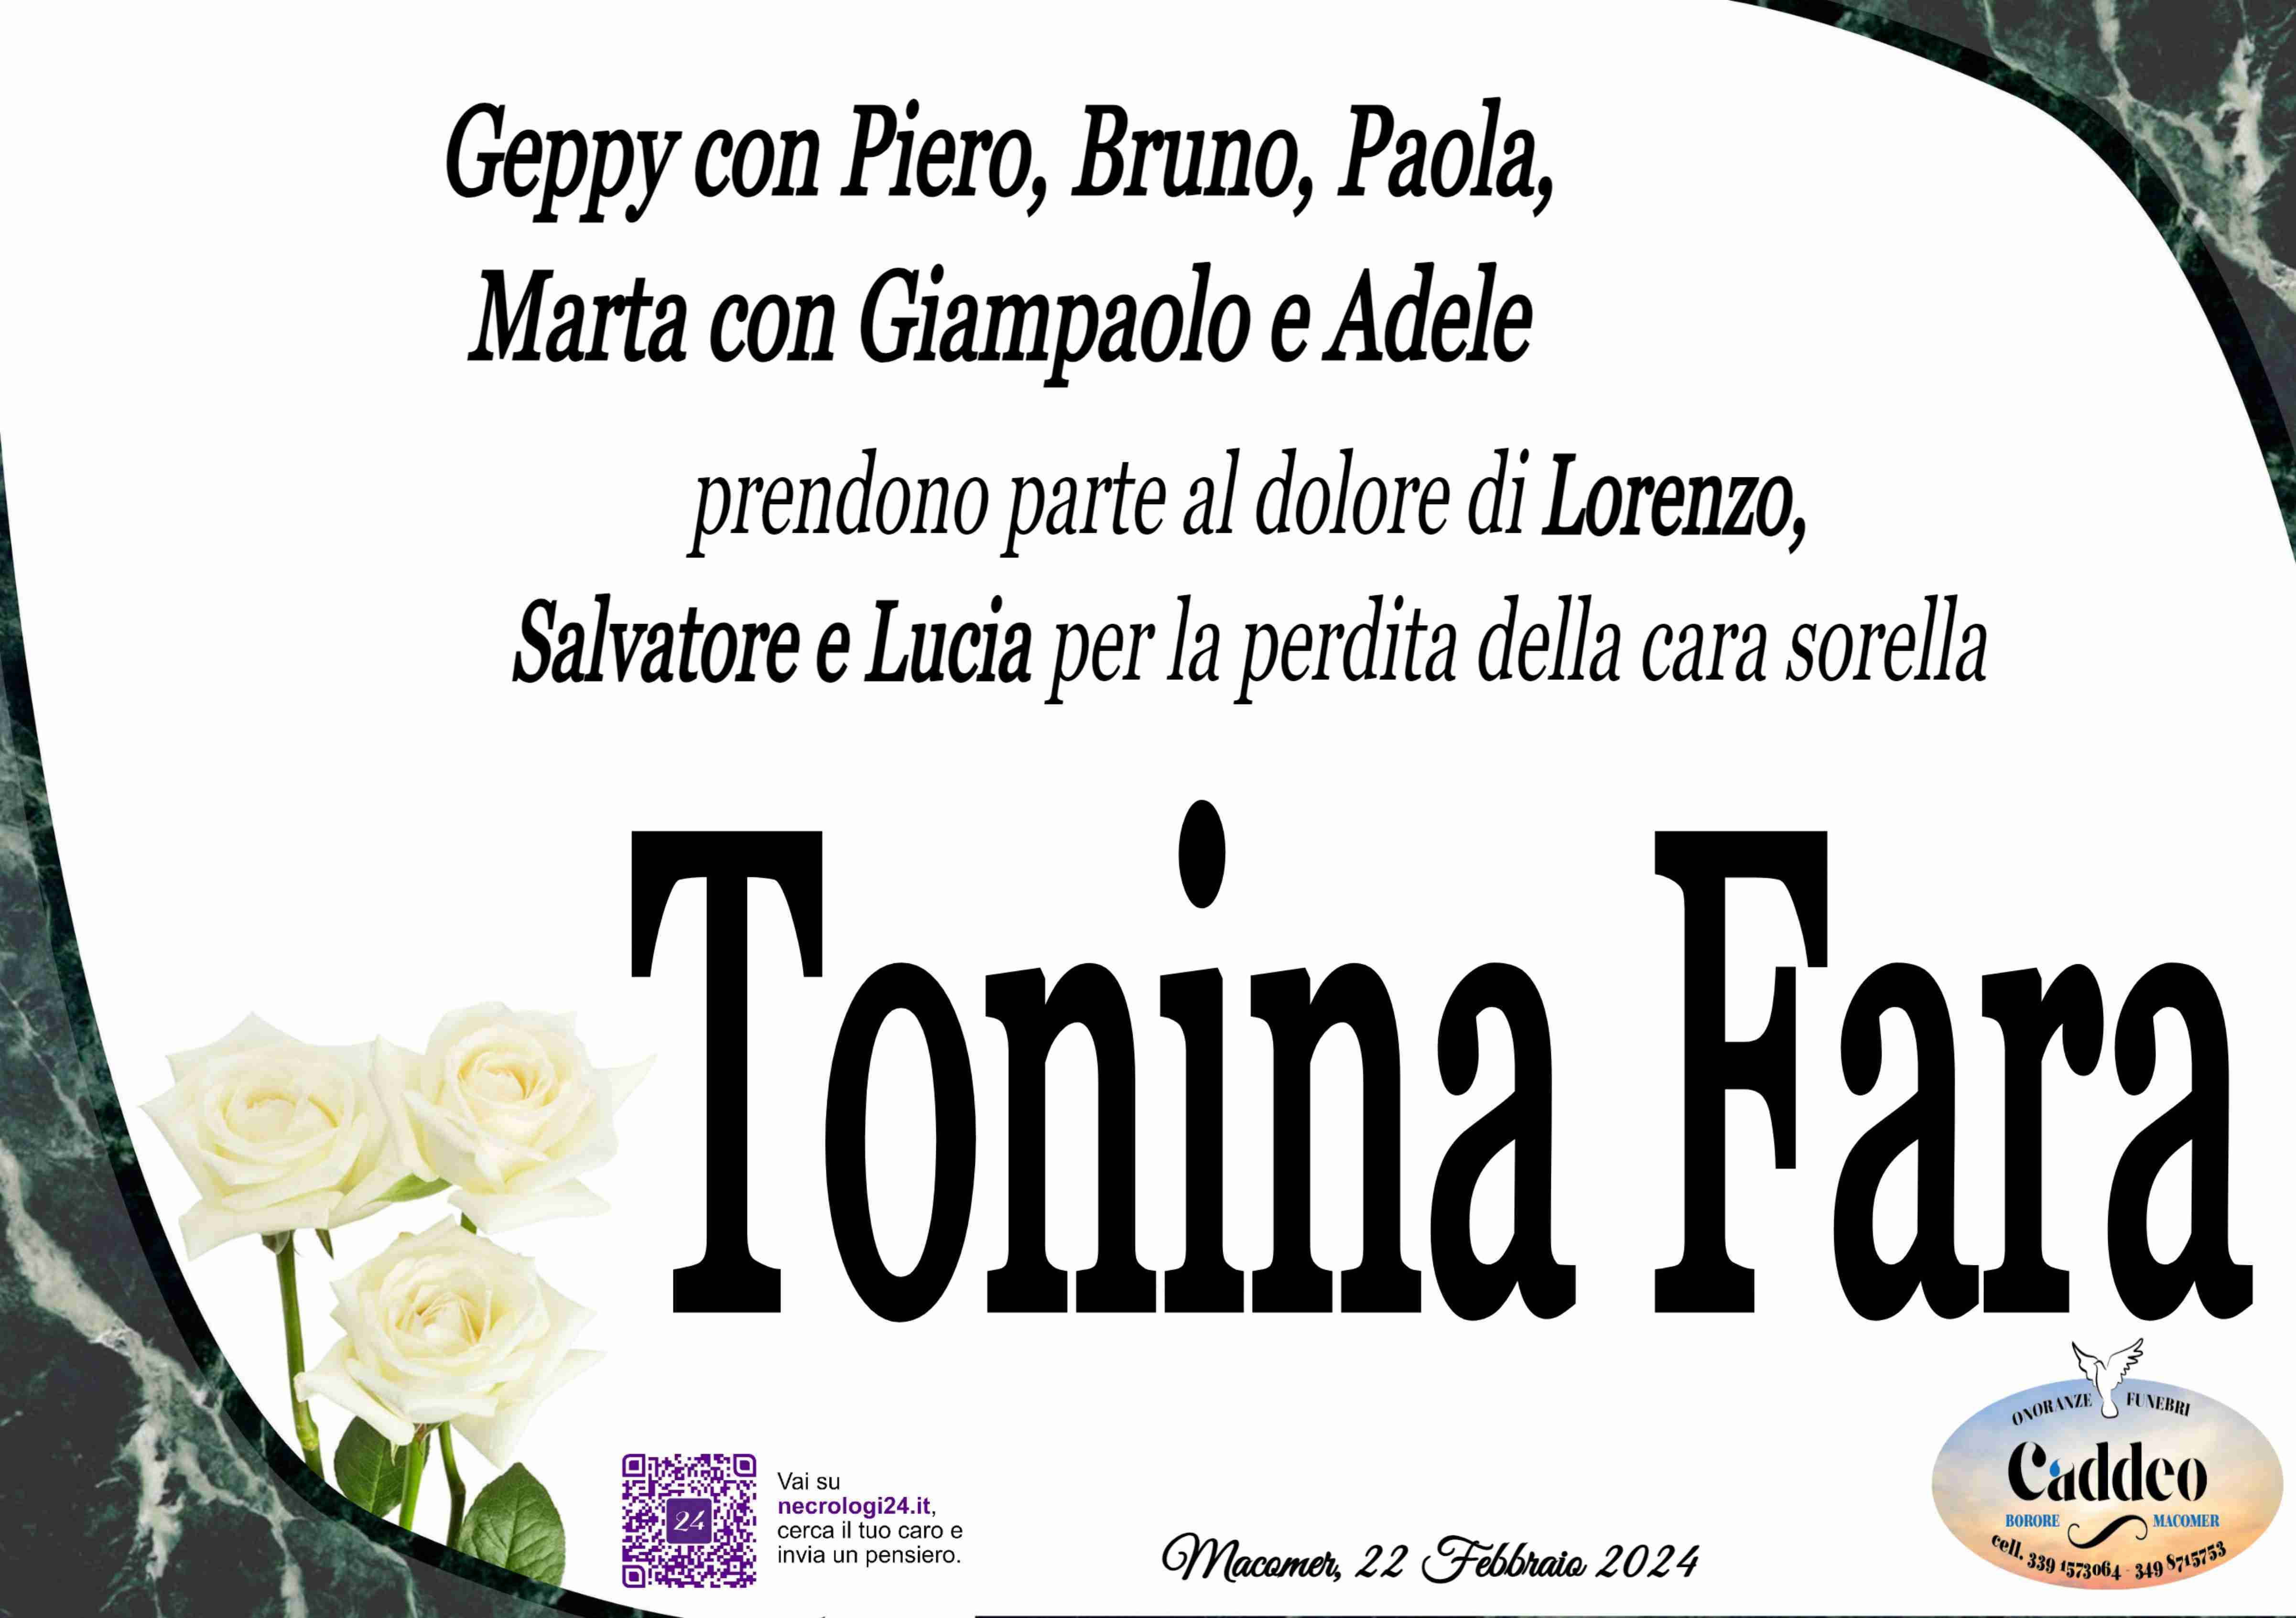 Tonina Giovanna Fara